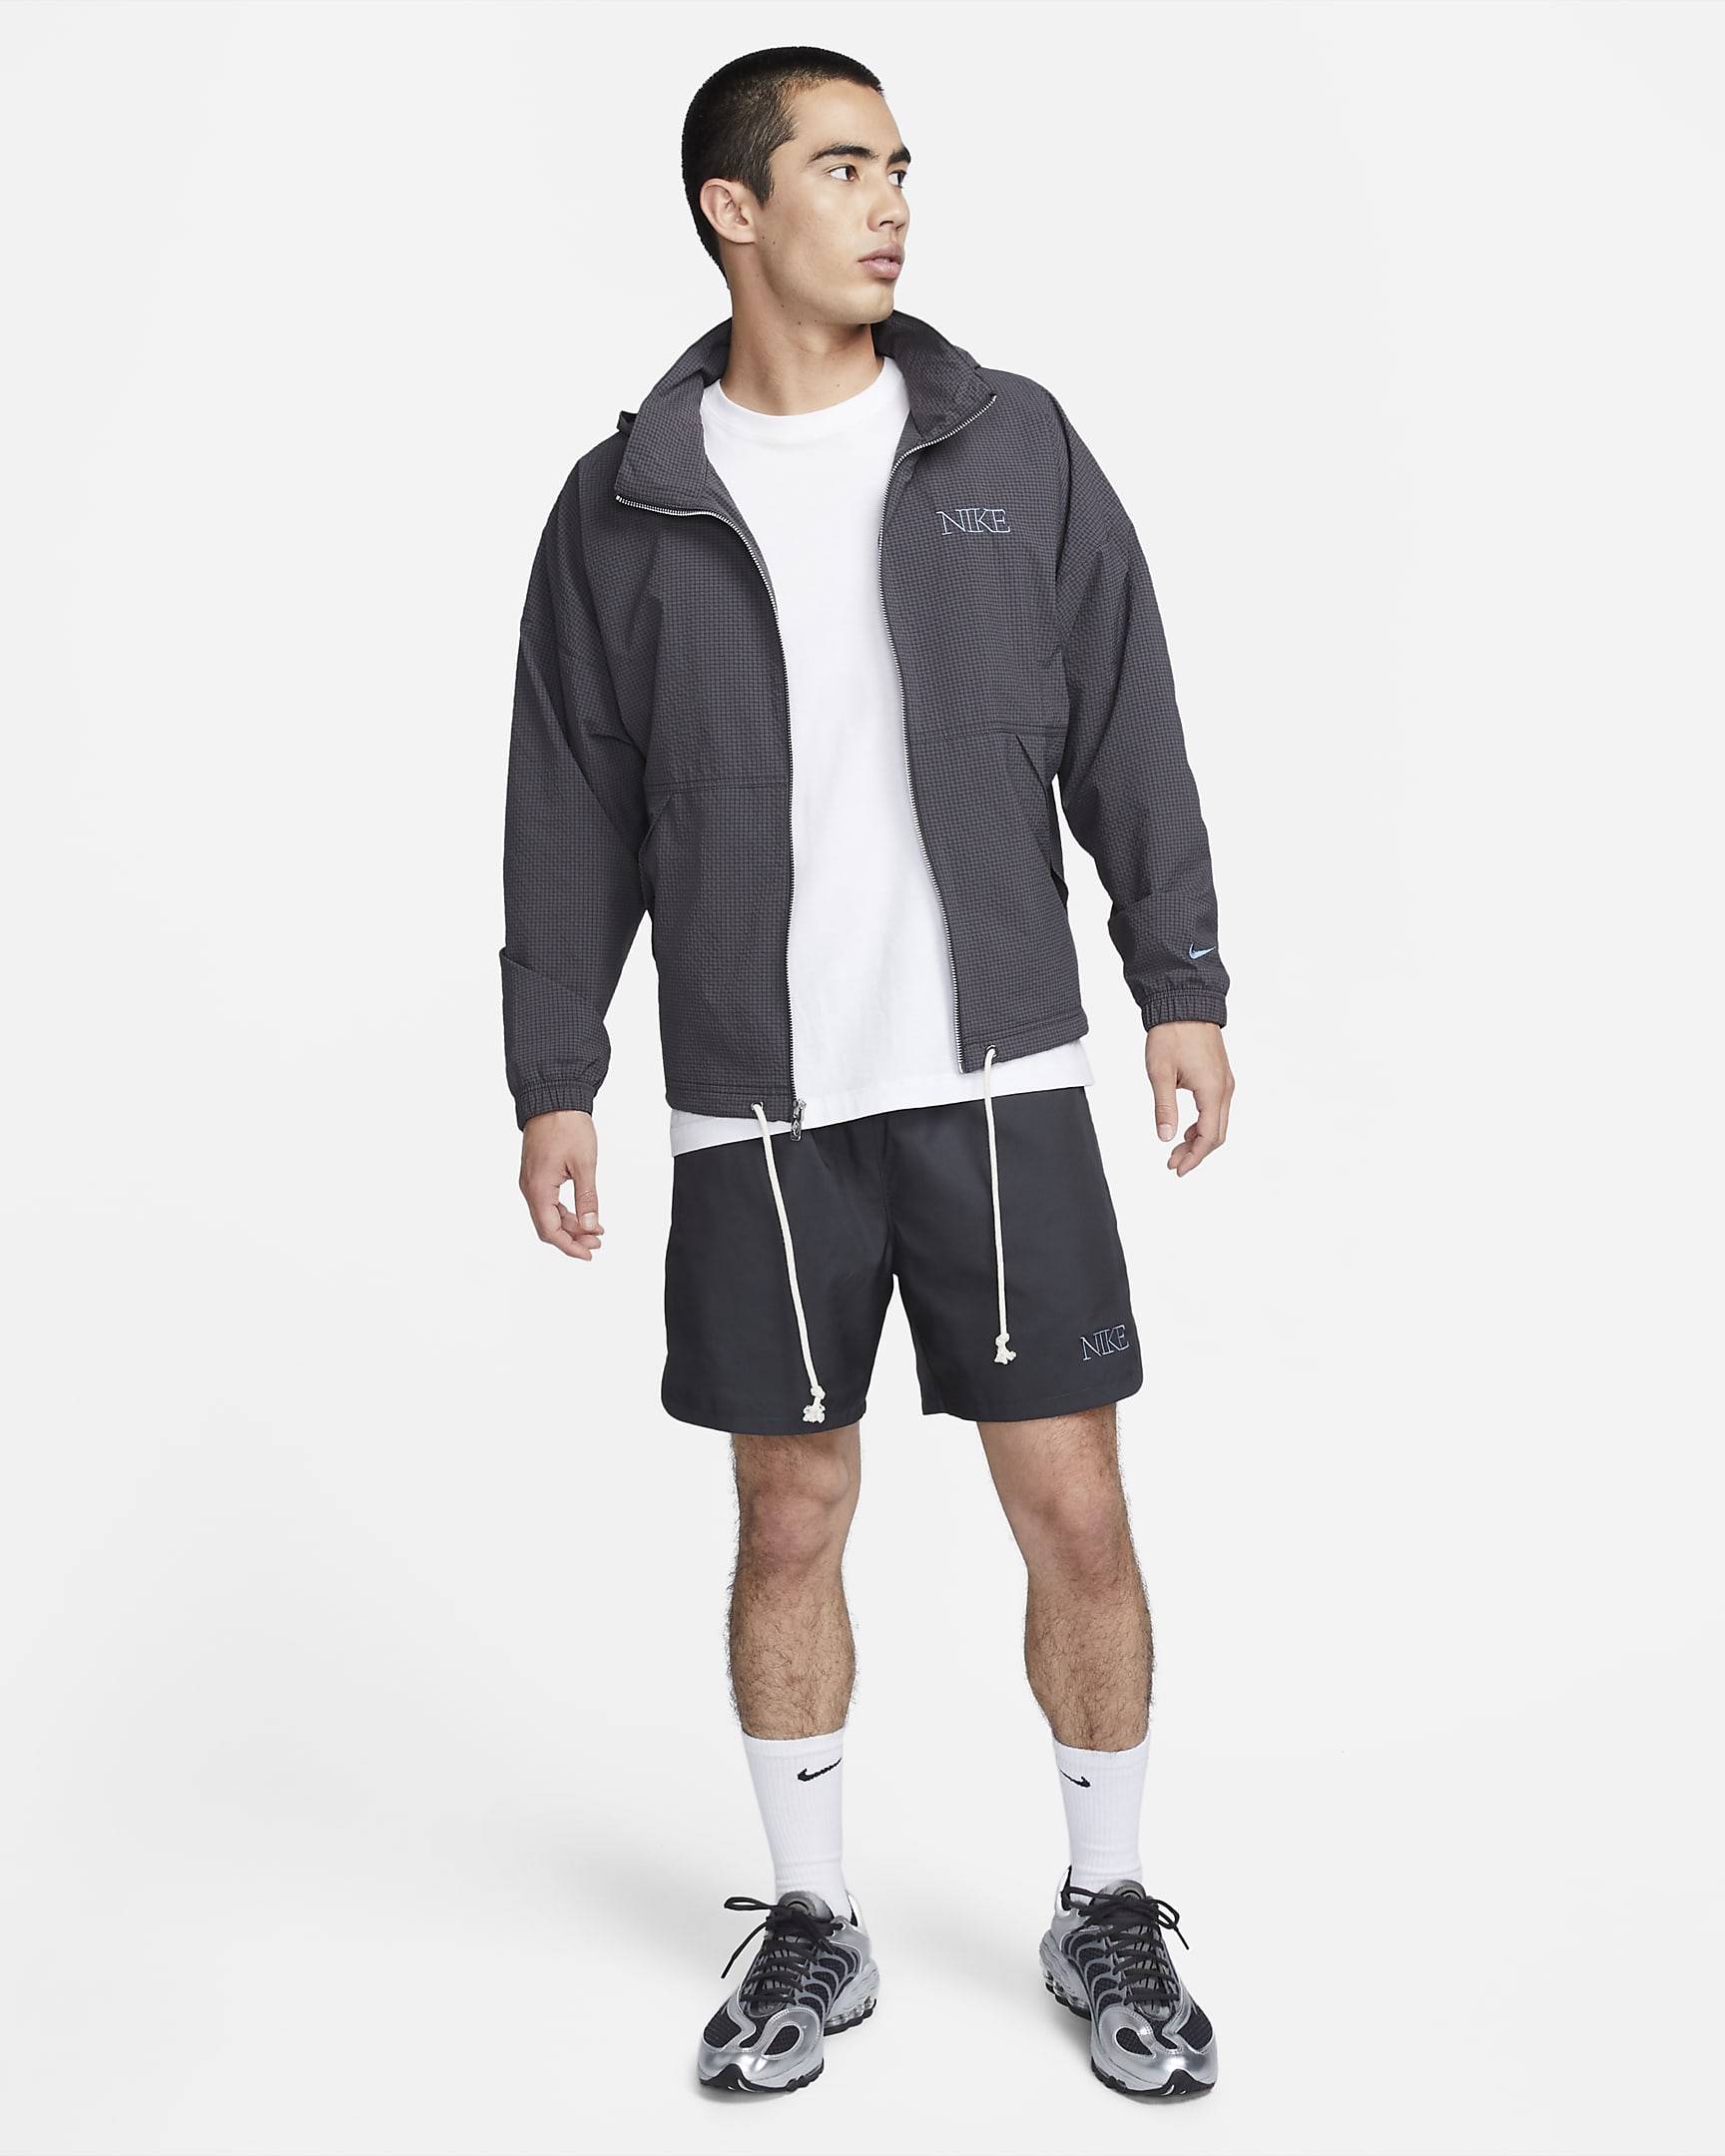 Nike Sportswear Men's Woven Lined Flow Shorts. Nike VN